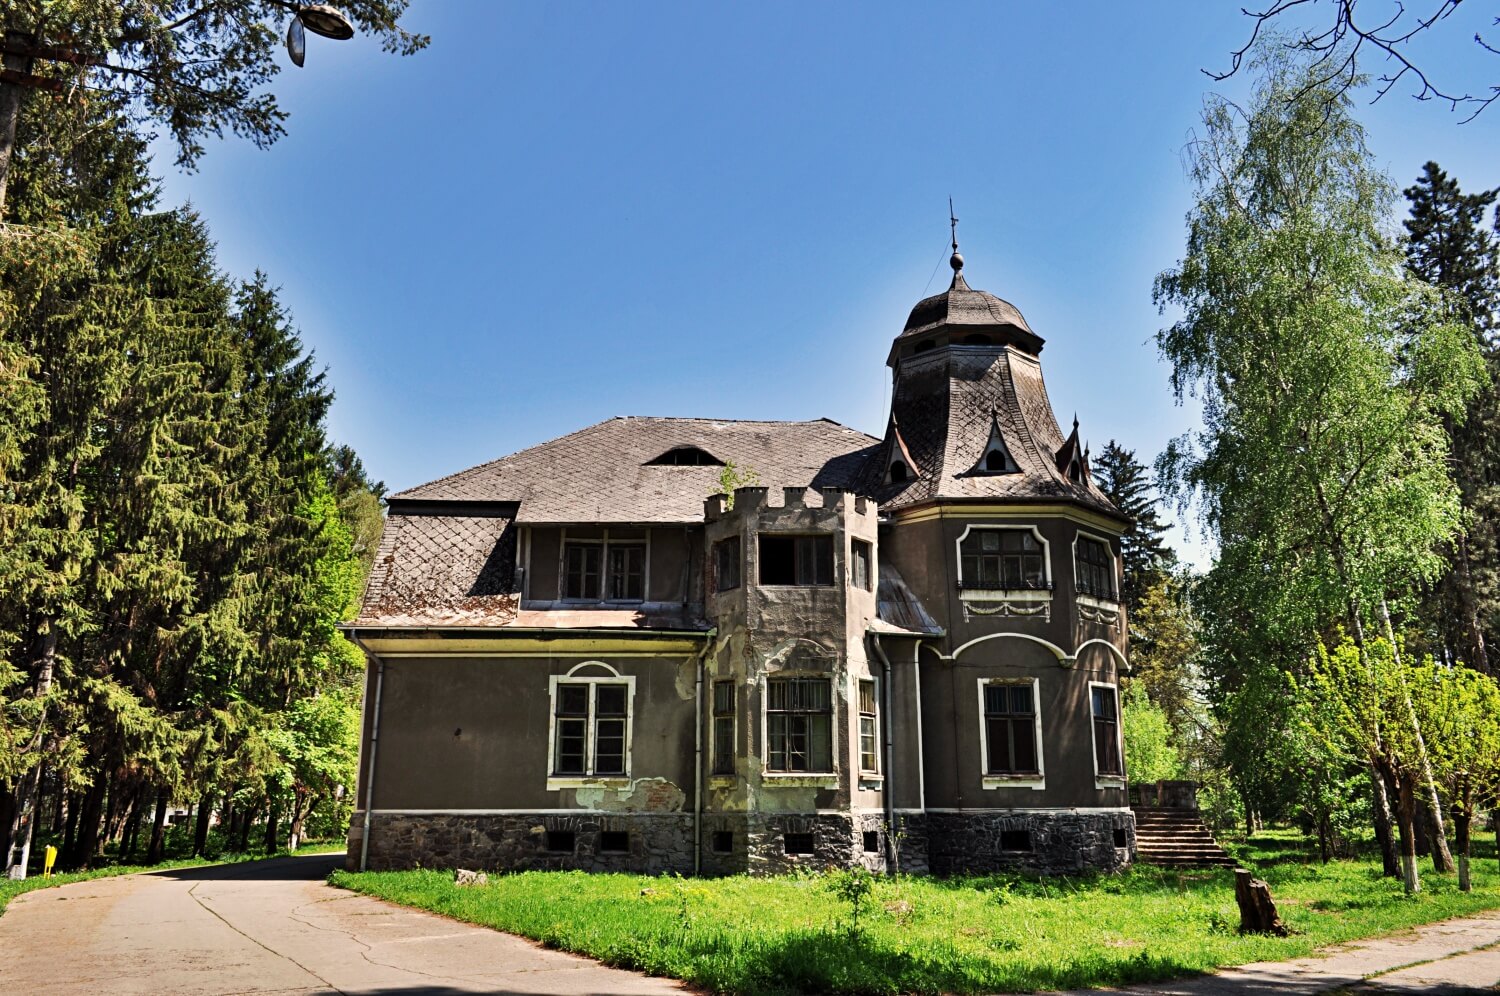 Pogány Castle in Păclișa